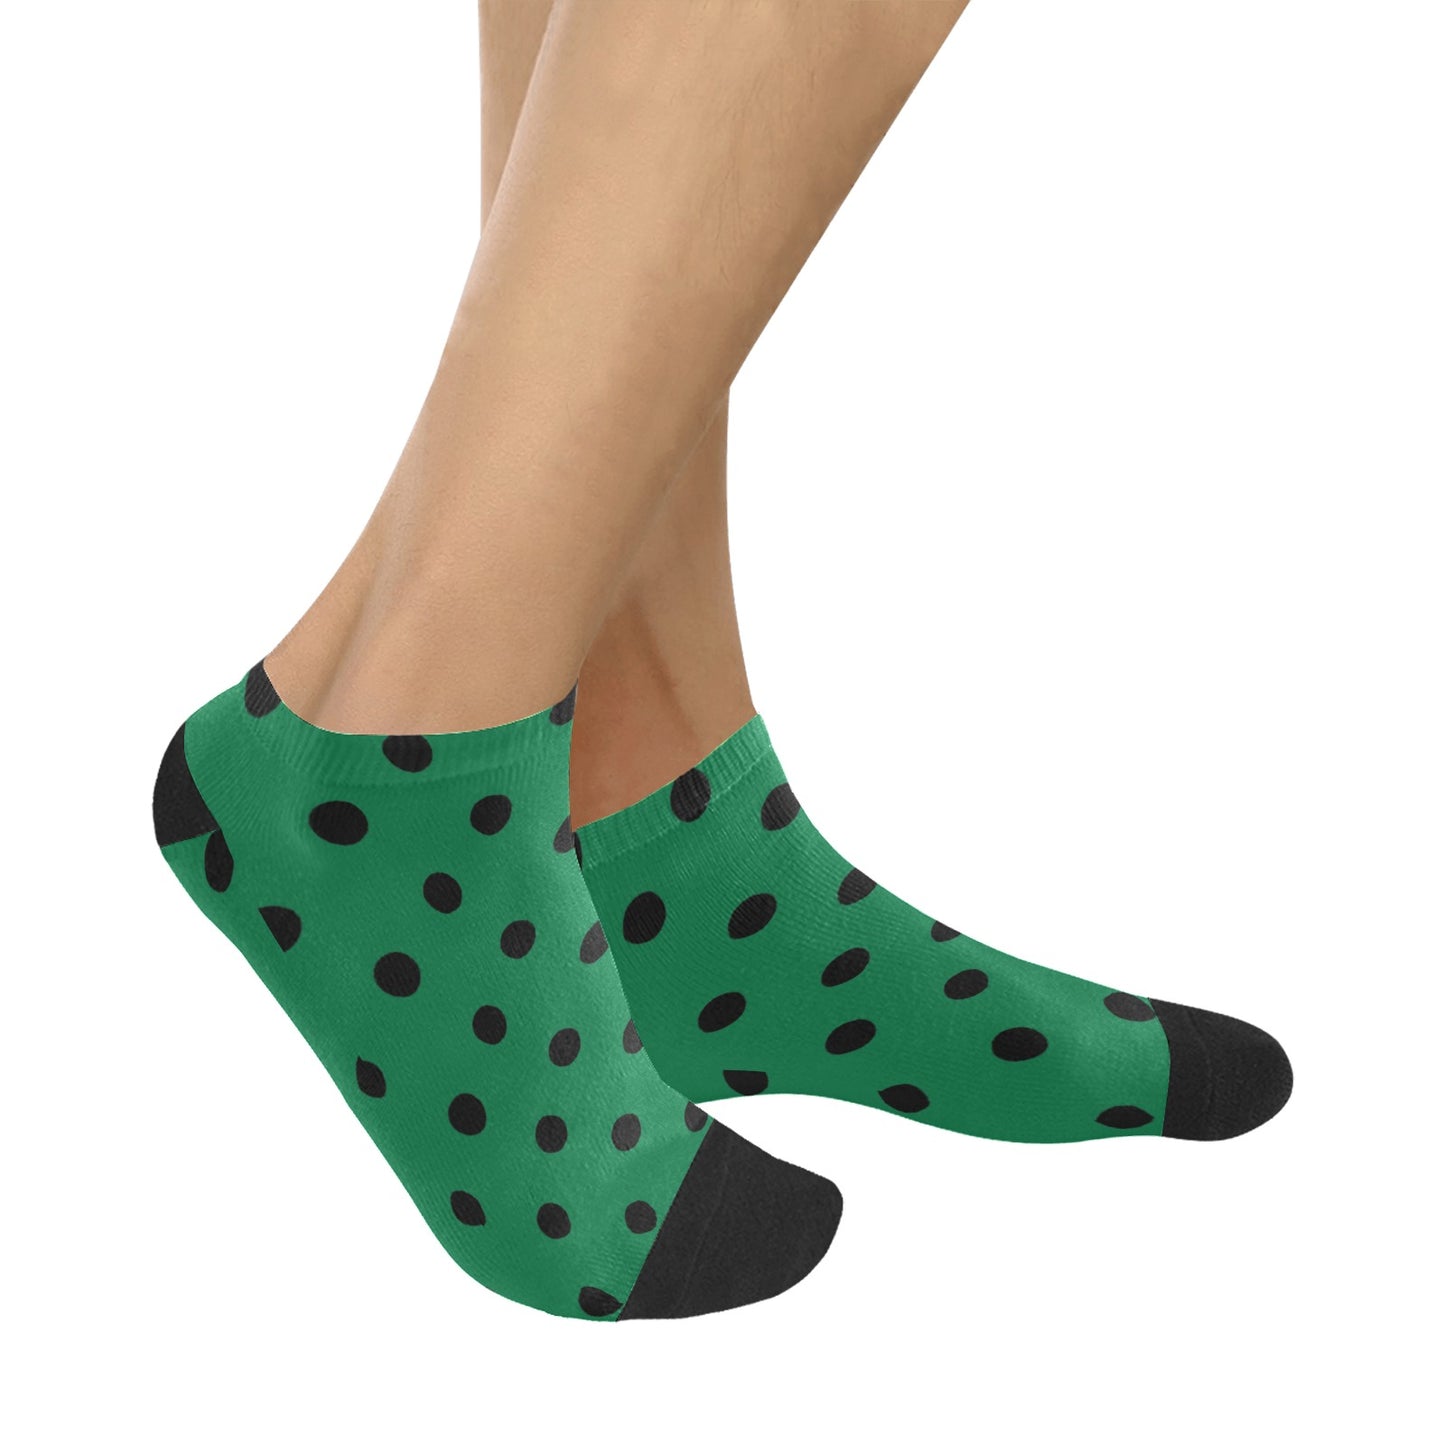 fz men's dot ankle socks one size / fz green dot socks men's ankle socks